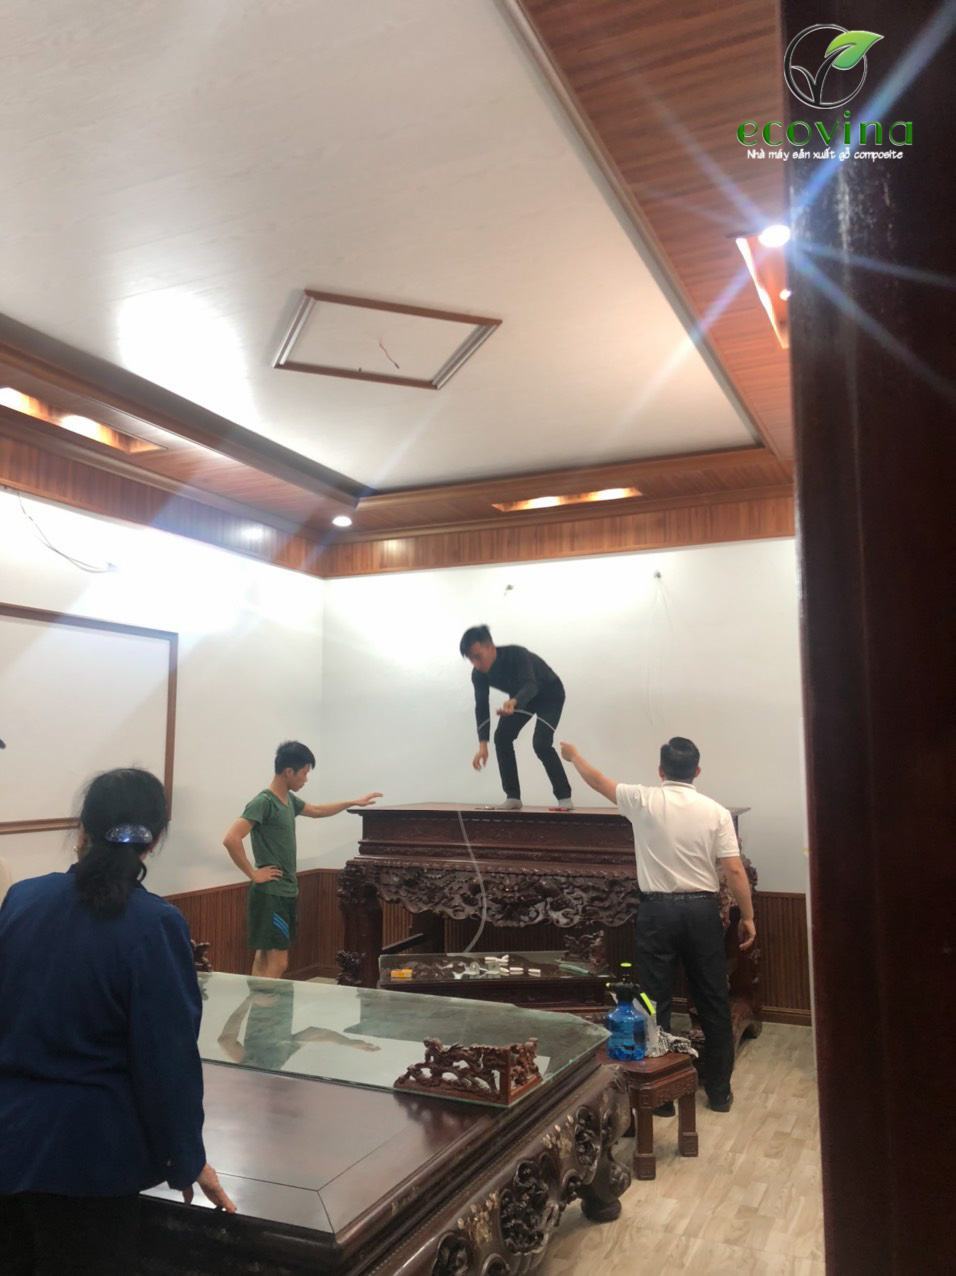 Ecovina thi công lắp đặt trần gỗ, tường gỗ tại Bắc Giang